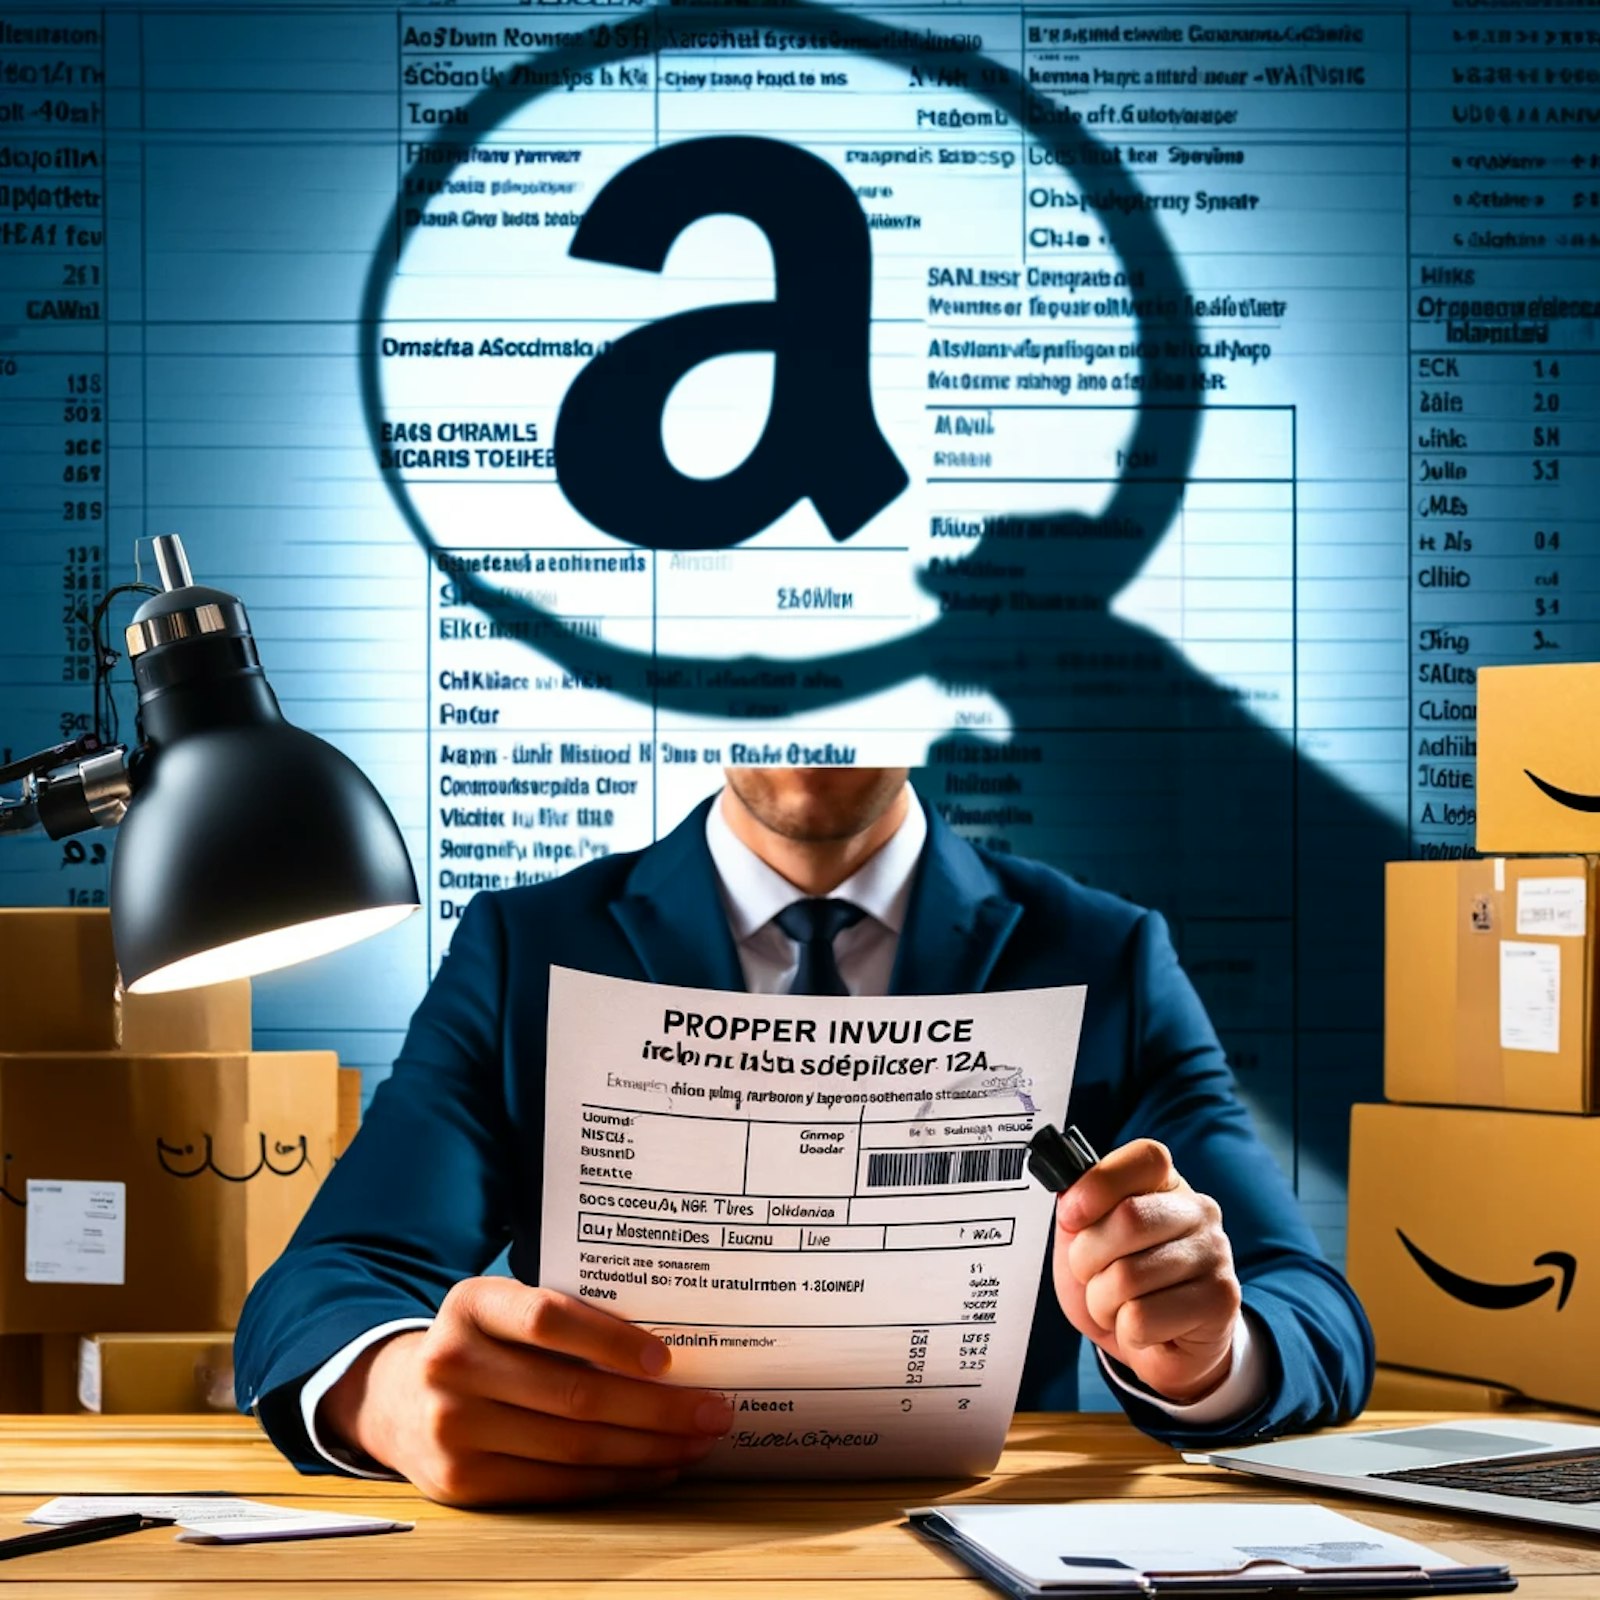 Image représentant des factures de fournisseurs, symbolisant les exigences d'Amazon pour maintenir l'authenticité et éviter les suspensions de compte.